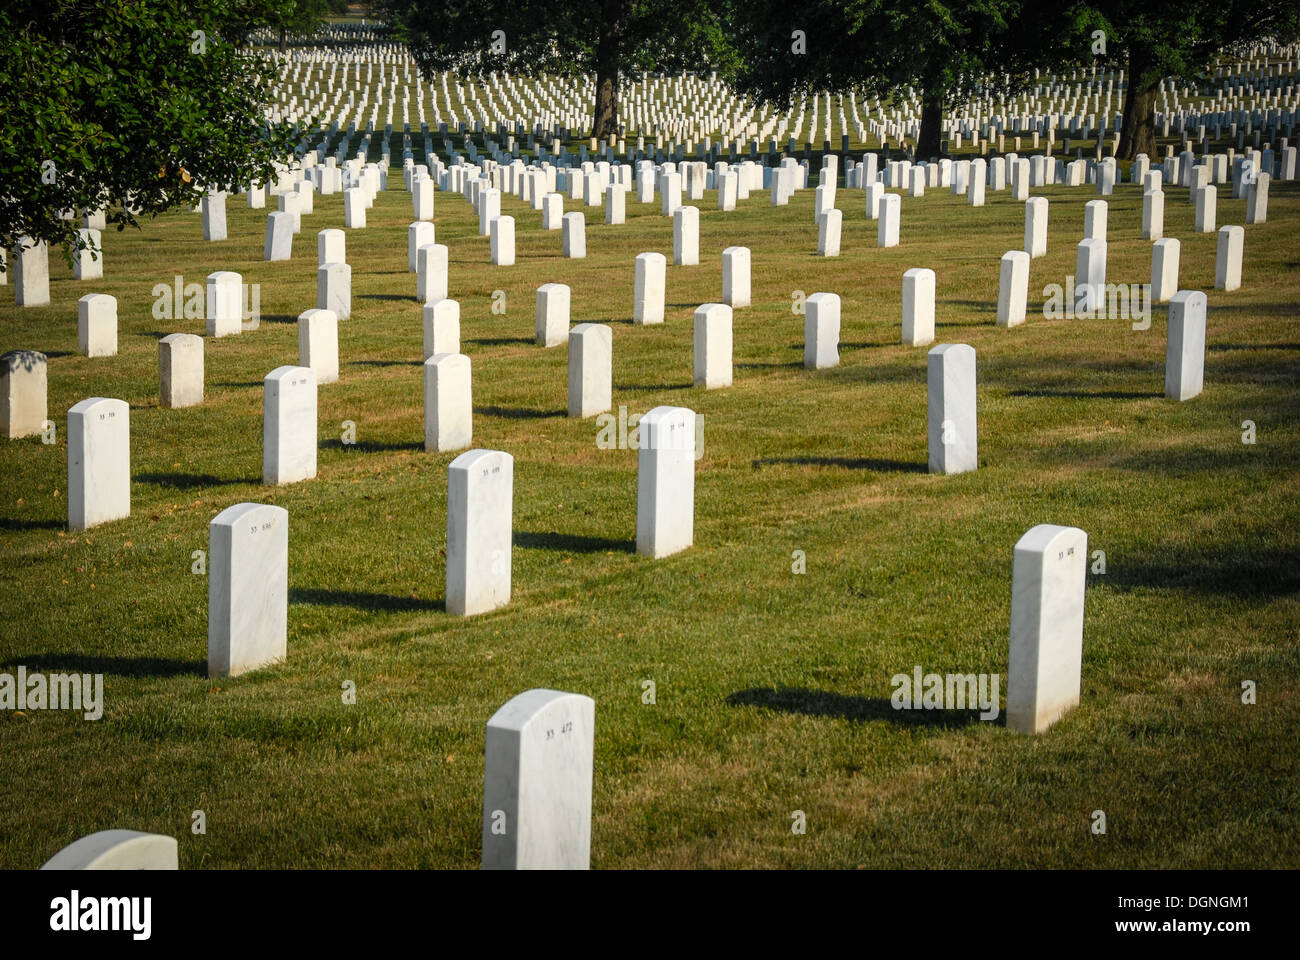 Graviers du cimetière national d'Arlington à Arlington, en Virginie, de l'autre côté du fleuve Potomac depuis Washington, D.C. (États-Unis) Banque D'Images